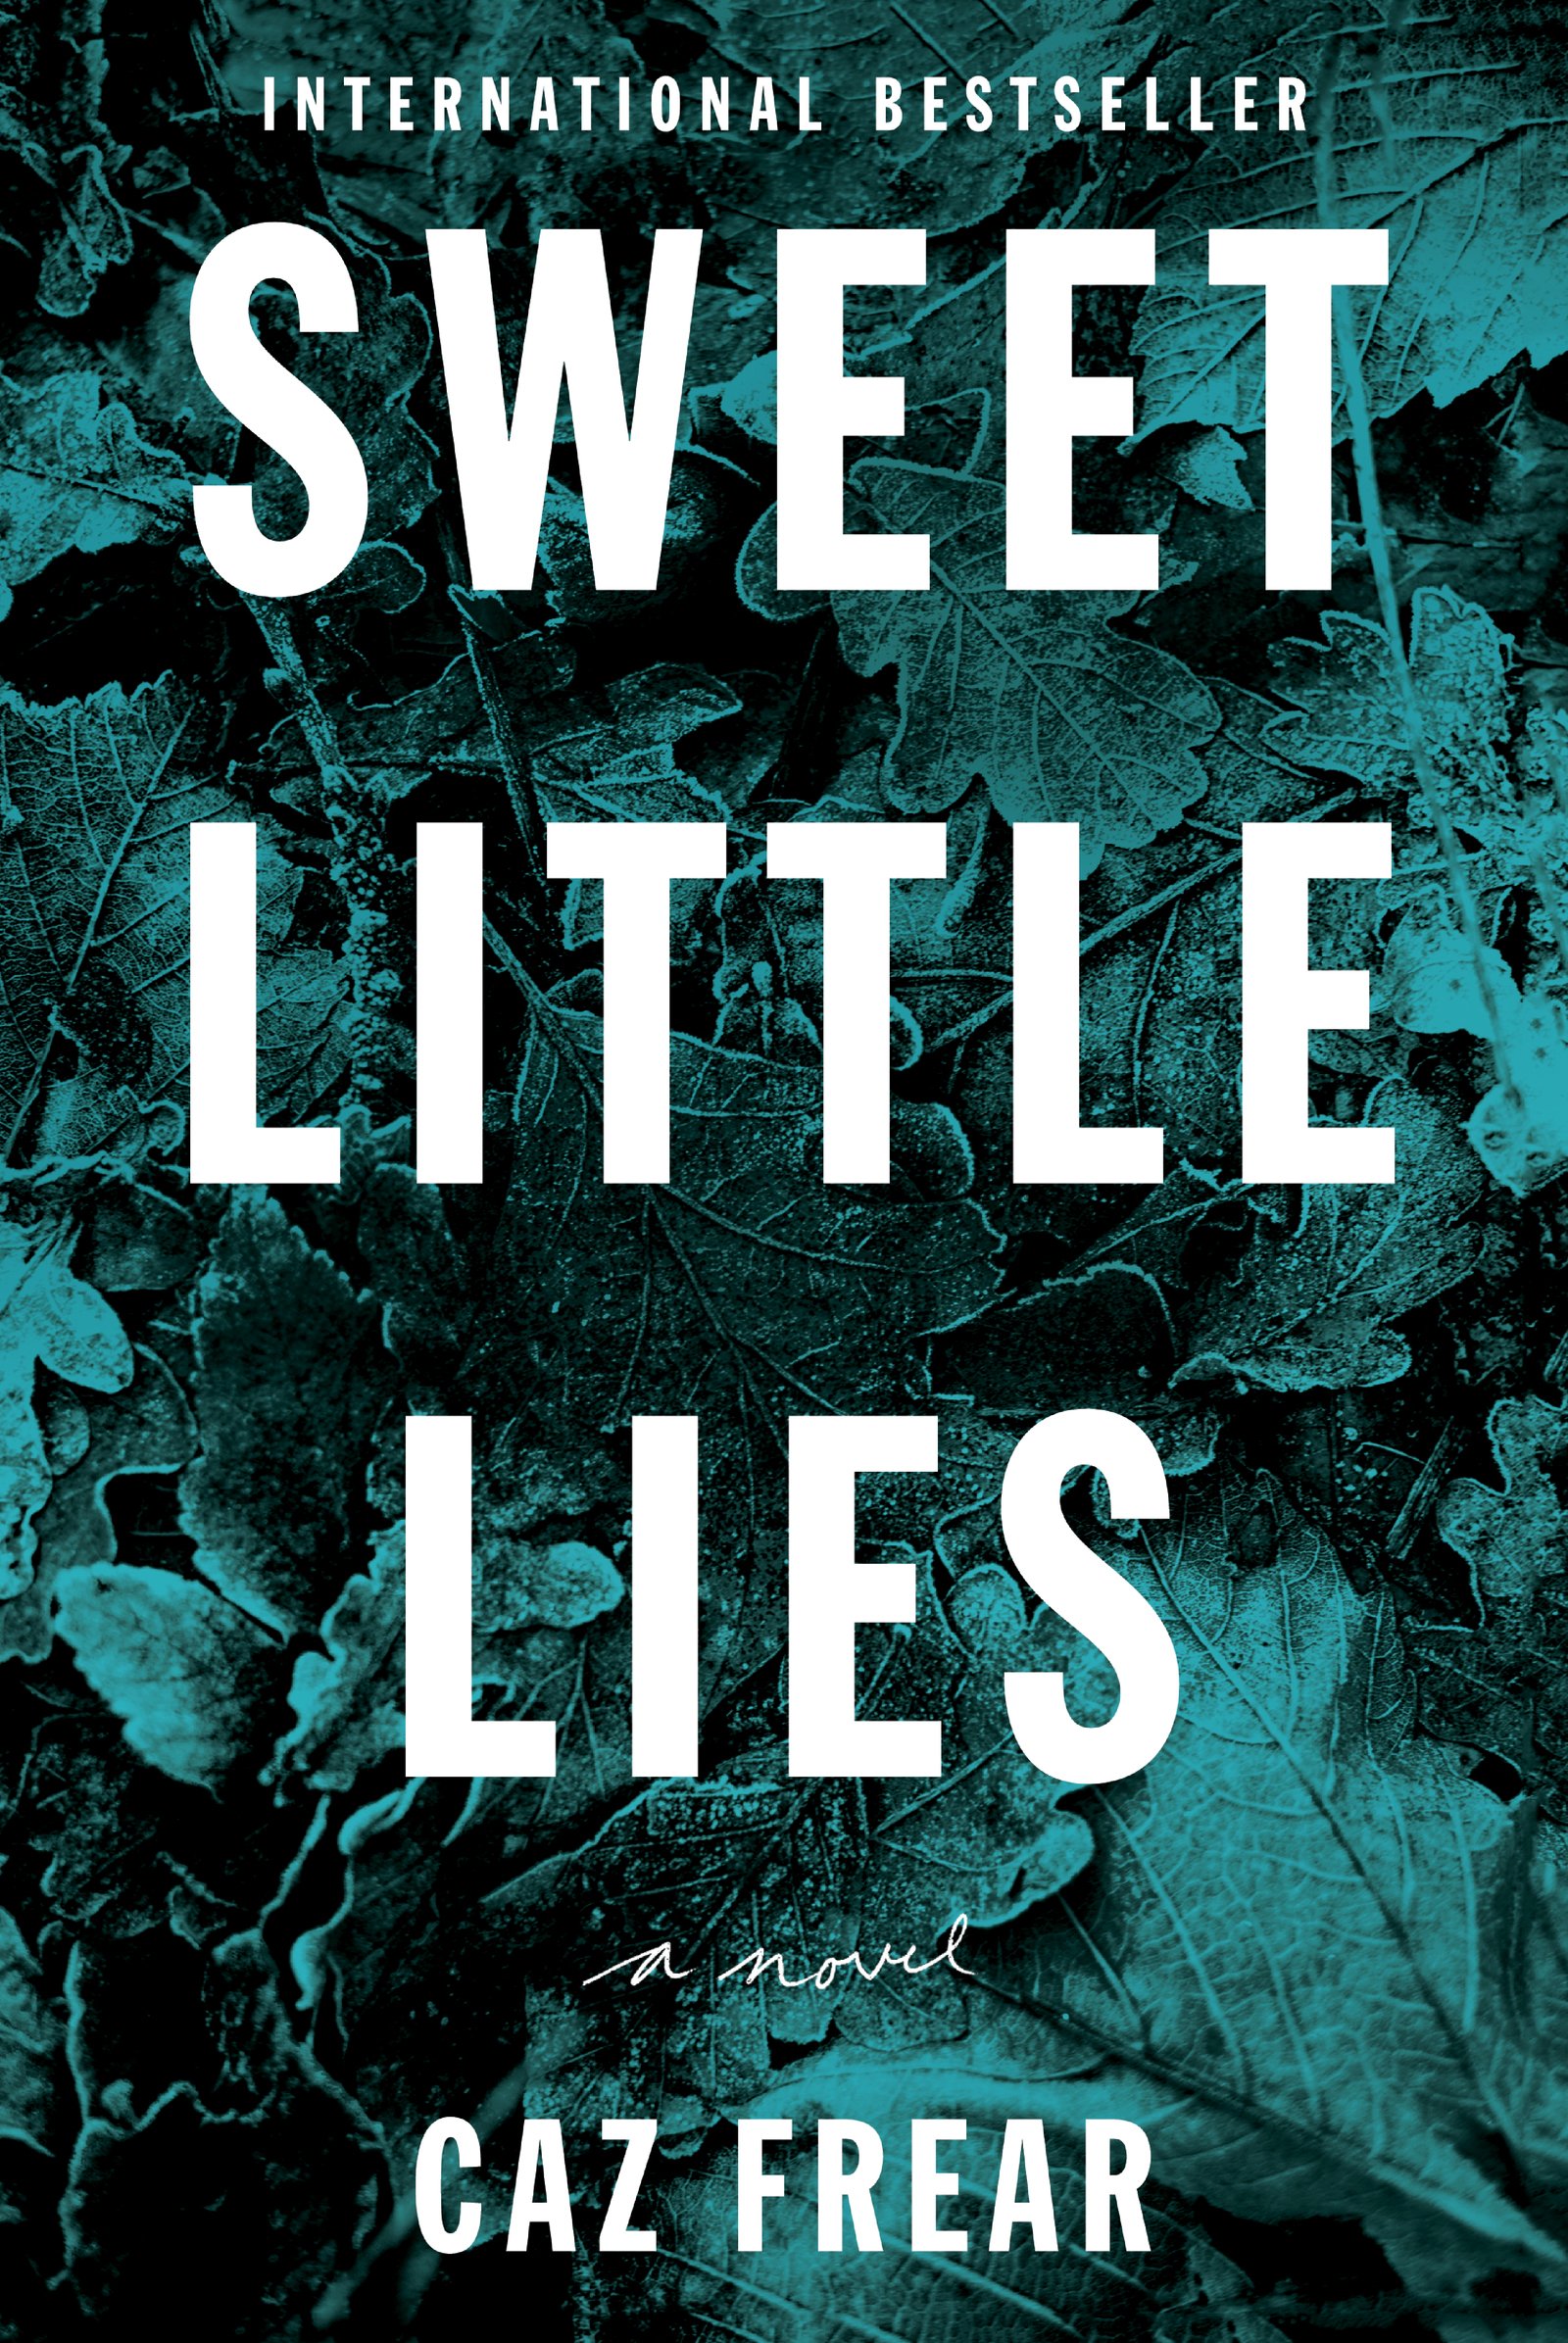 Sweet Little Lies: A Novel